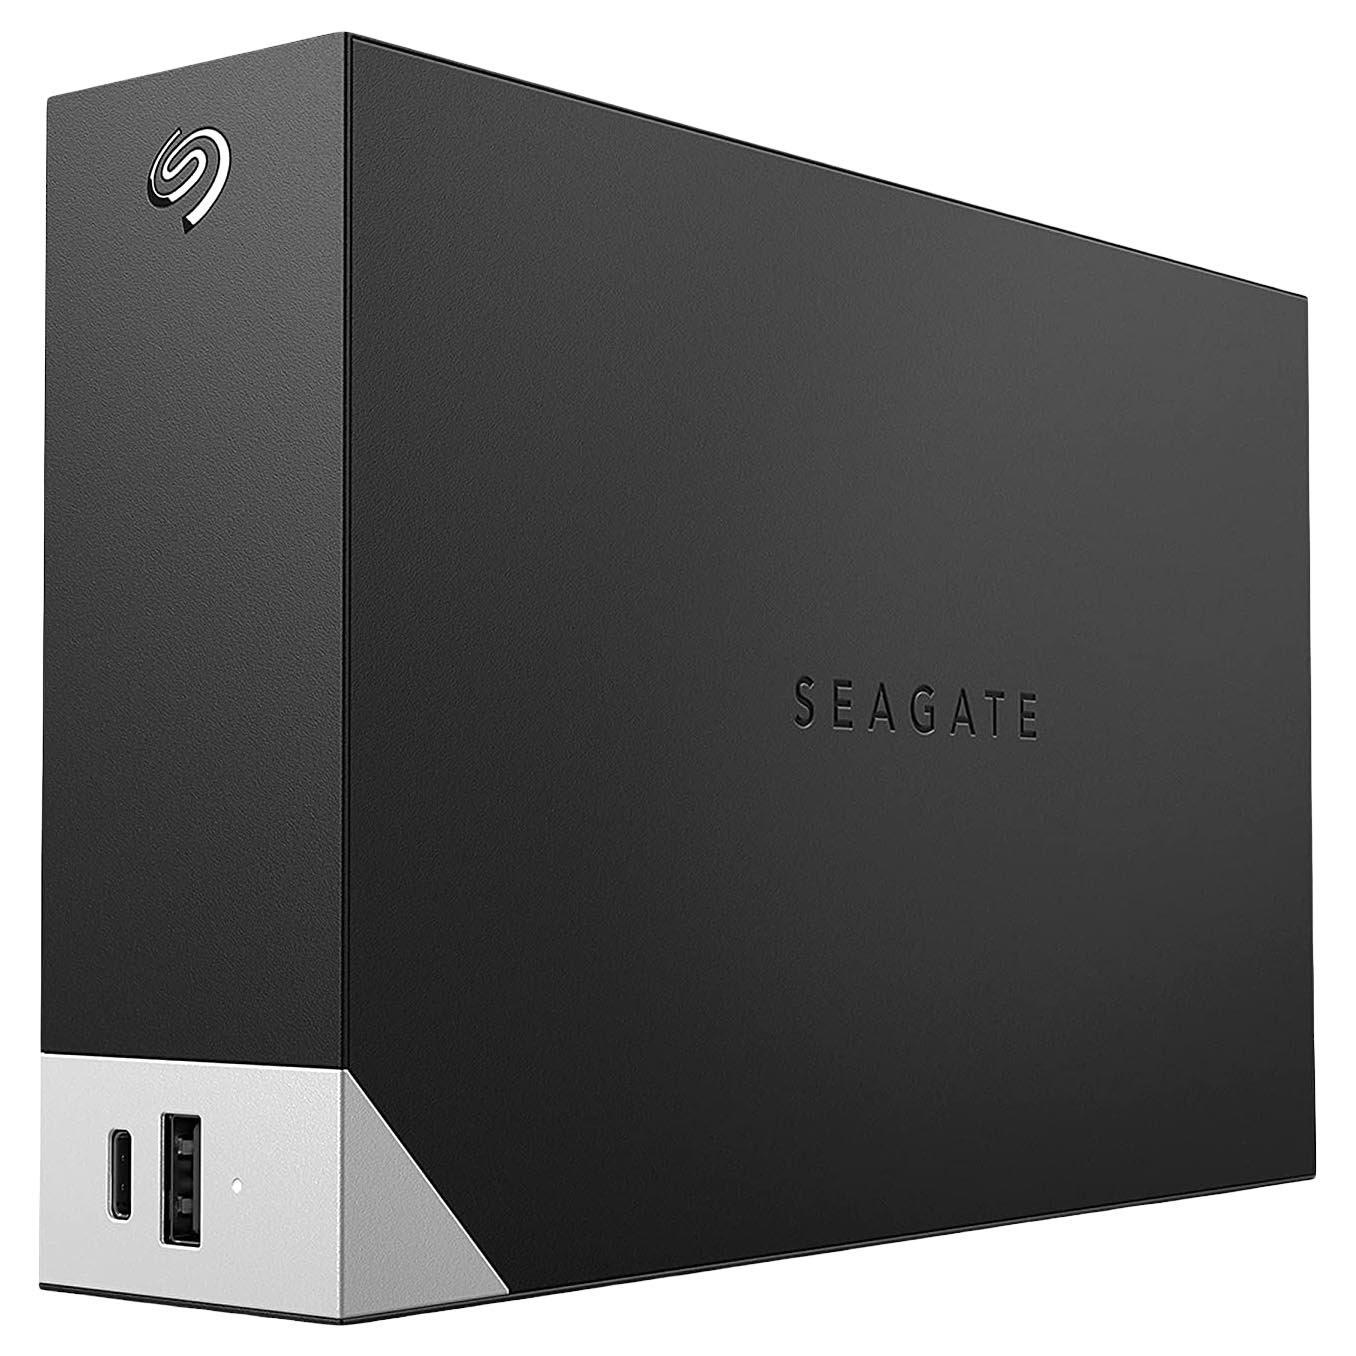 Внешний жесткий диск Seagate One Touch, STLC16000400, 16Тб, 3.5 внешний жесткий диск 2 5 5 tb usb 3 0 seagate one touch серебристый